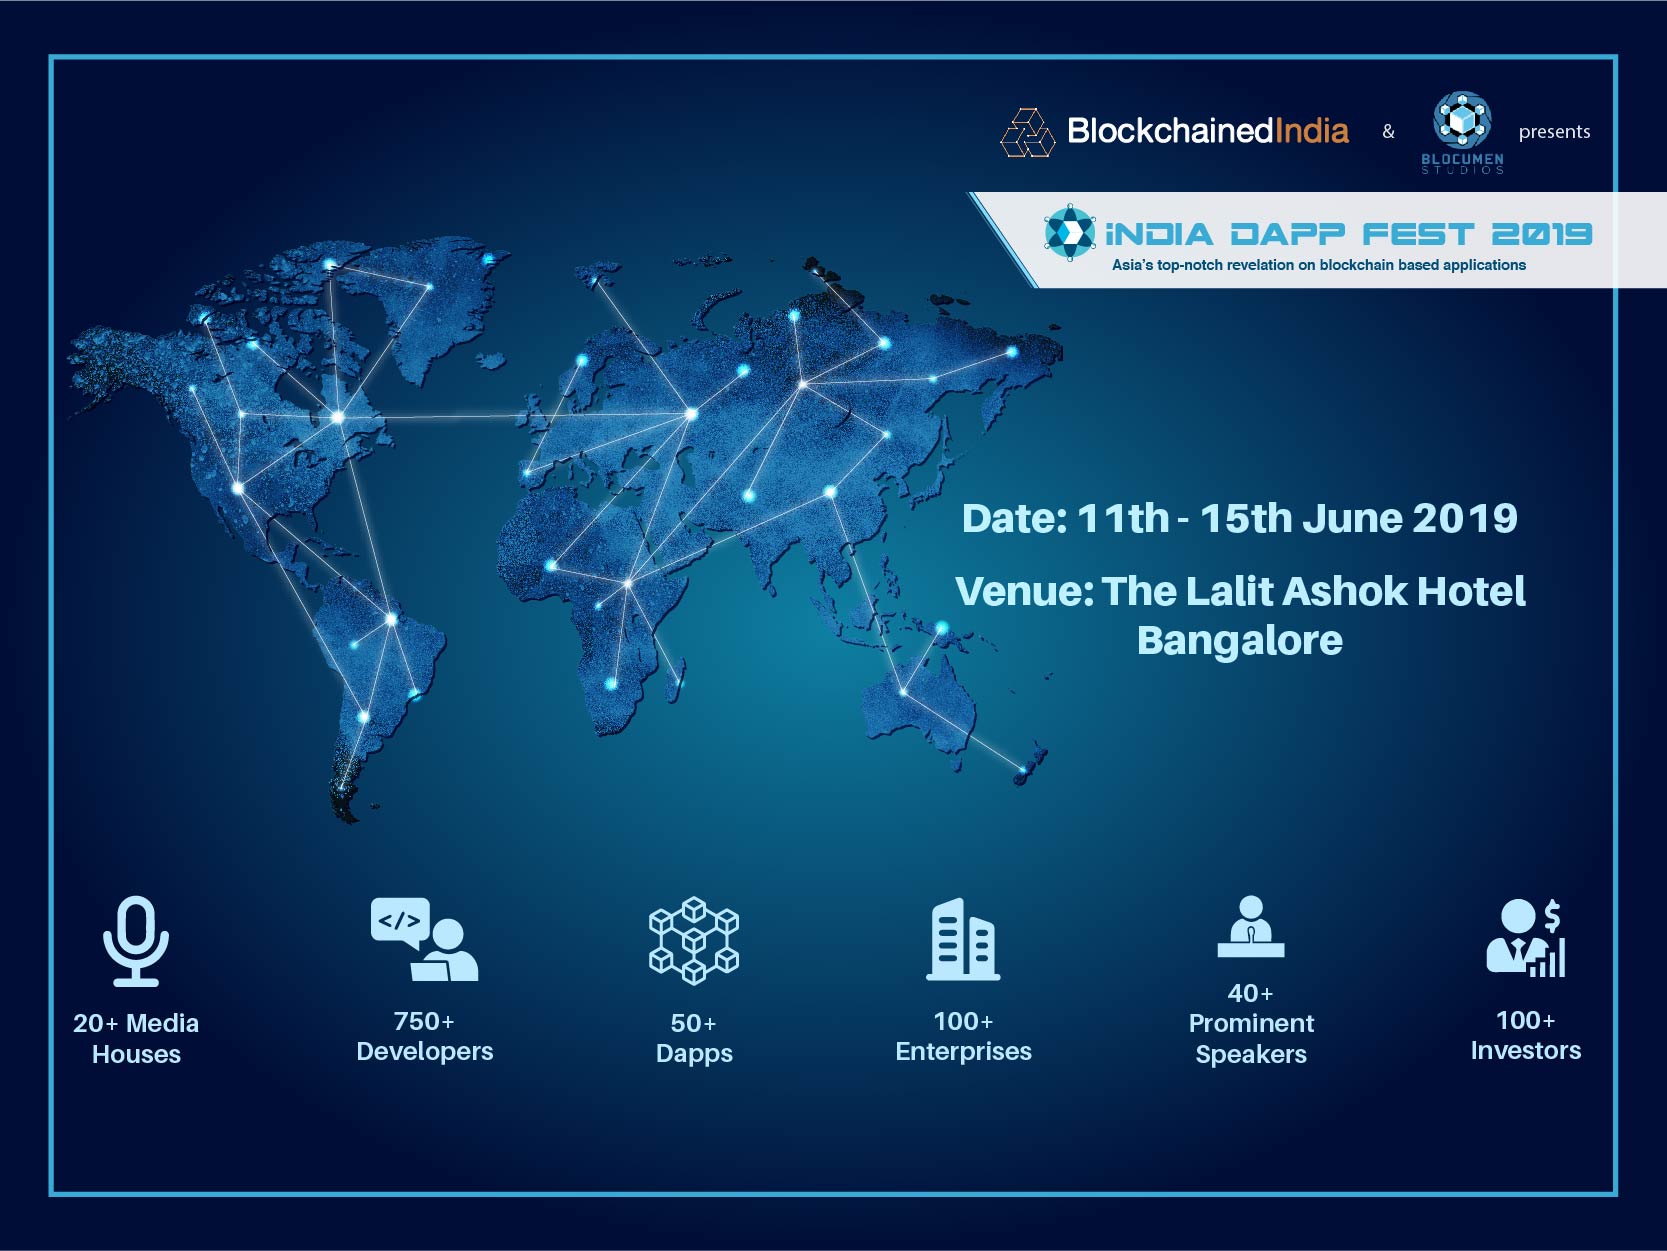 The India Dapp Fest 2019 Blockchain Conference in Bangalore, Bangalore, Karnataka, India